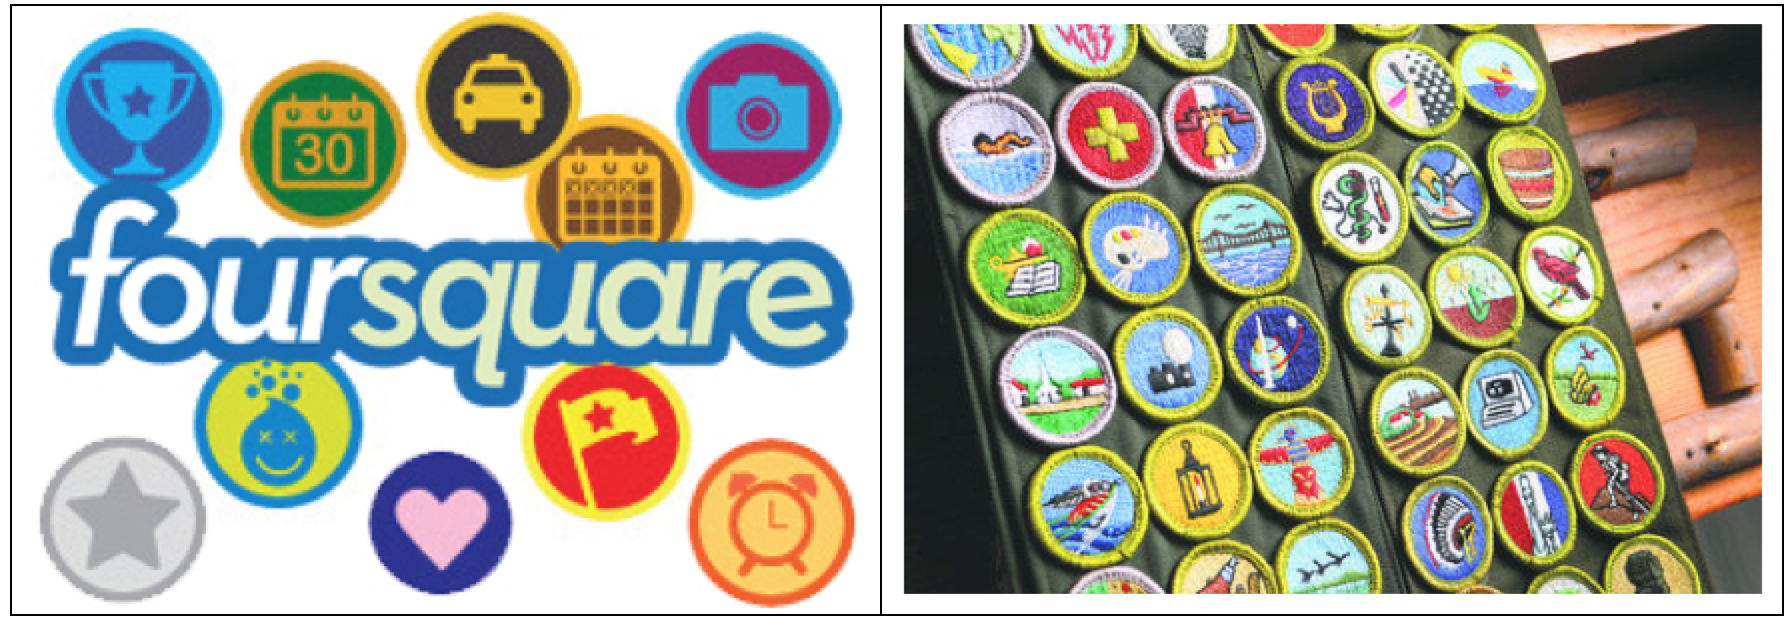 Imagen 2. Badges o insignias en Foursquare y Boyscouts.